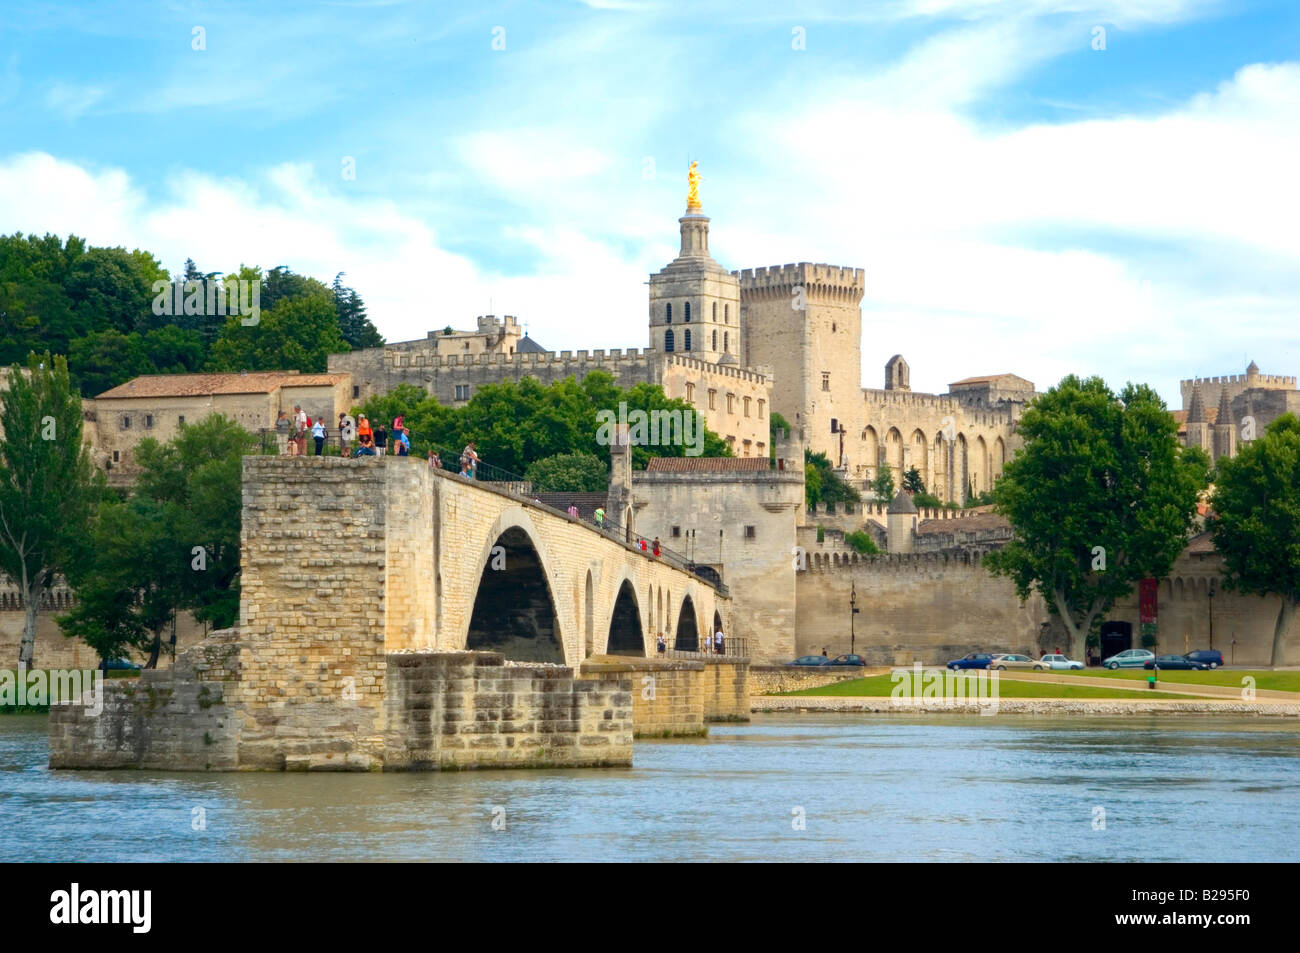 Le Pont d'Avignon et palais des Papes Avignon Provence France Banque D'Images